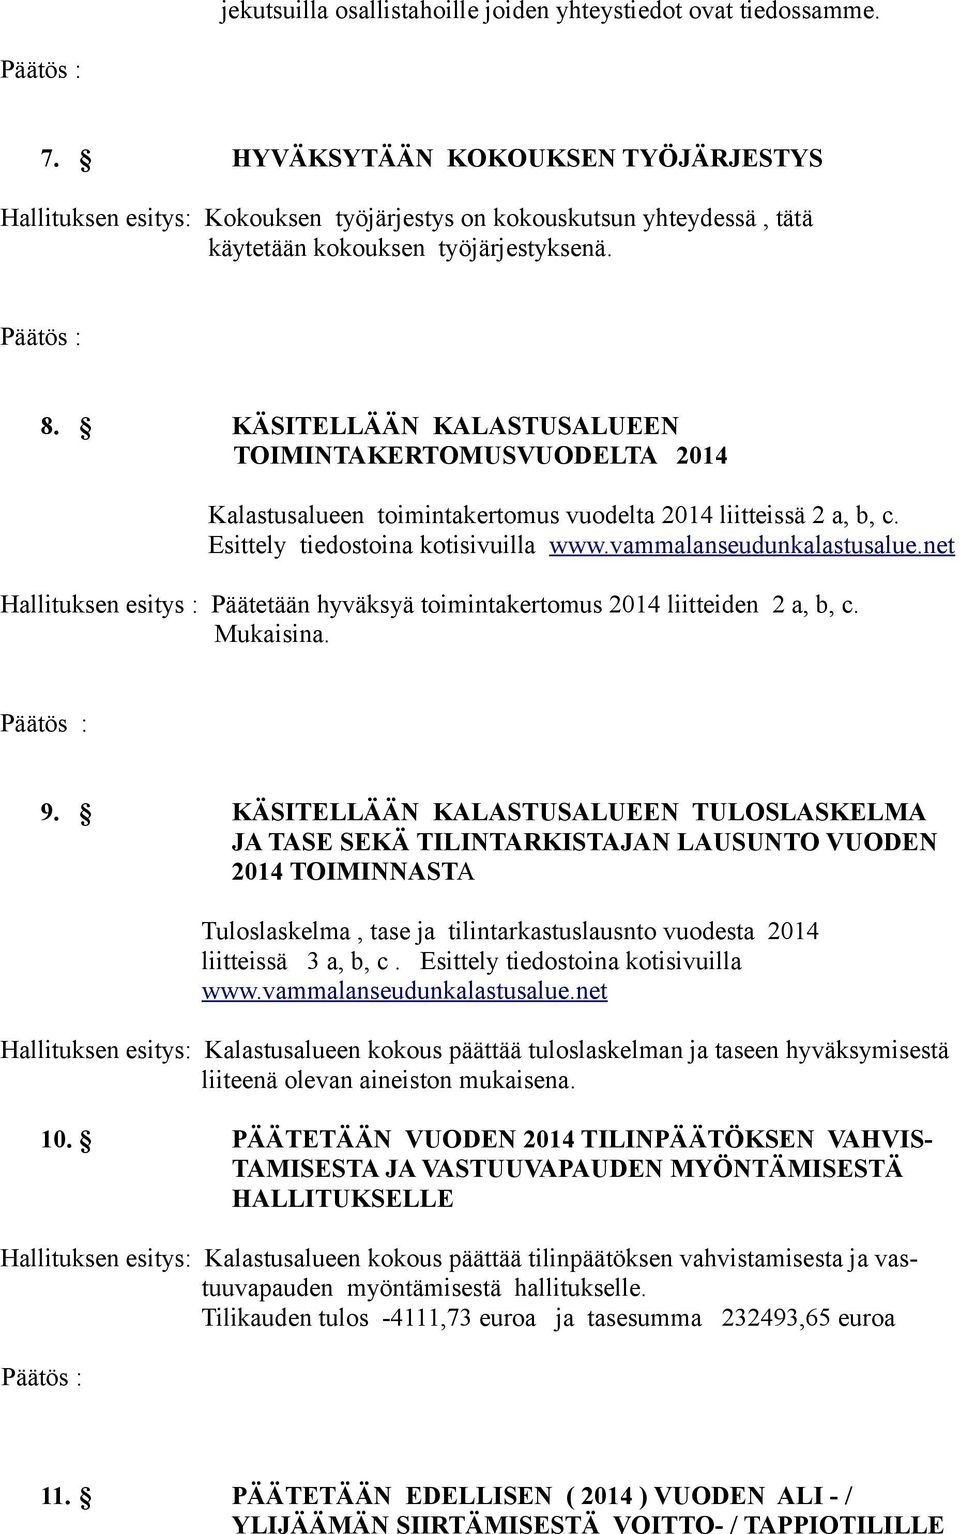 KÄSITELLÄÄN KALASTUSALUEEN TOIMINTAKERTOMUSVUODELTA 2014 Kalastusalueen toimintakertomus vuodelta 2014 liitteissä 2 a, b, c. Esittely tiedostoina kotisivuilla www.vammalanseudunkalastusalue.